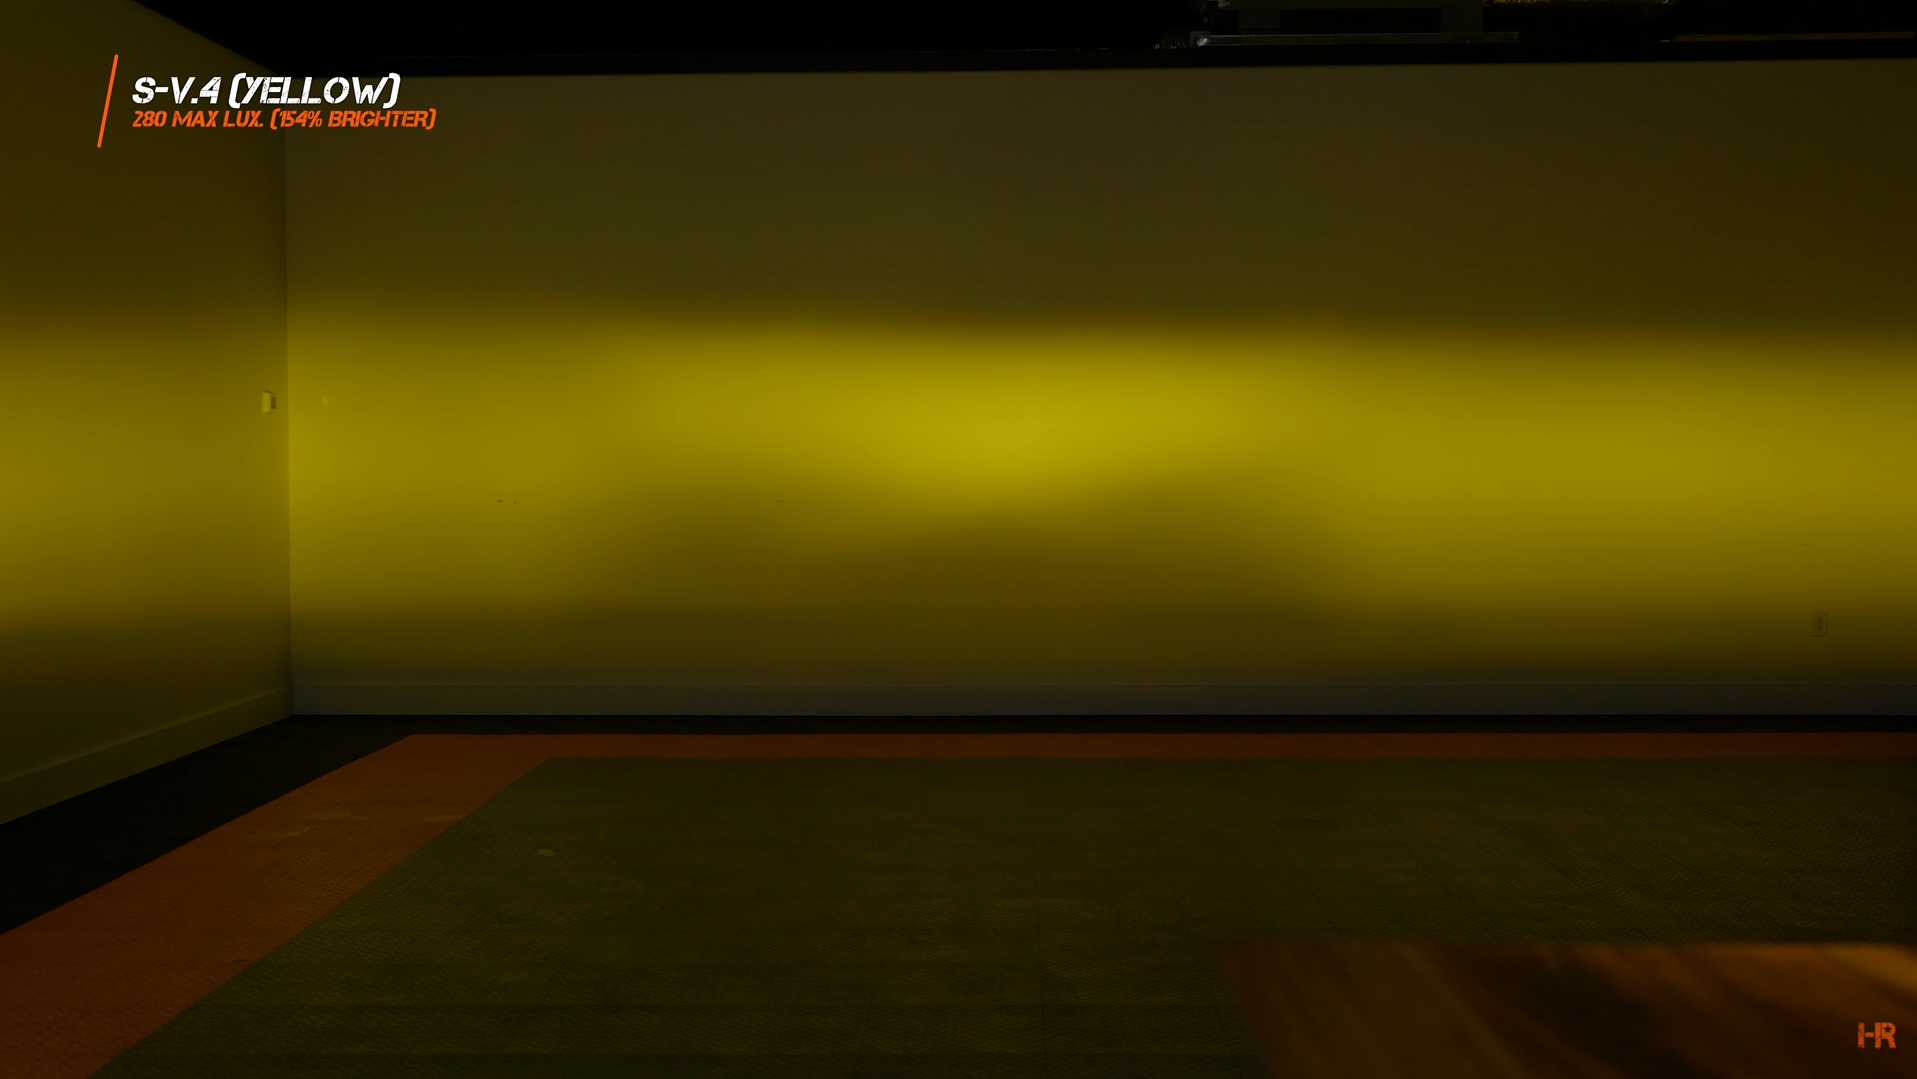 S-V.4 Yellow LED fog light beam pattern.